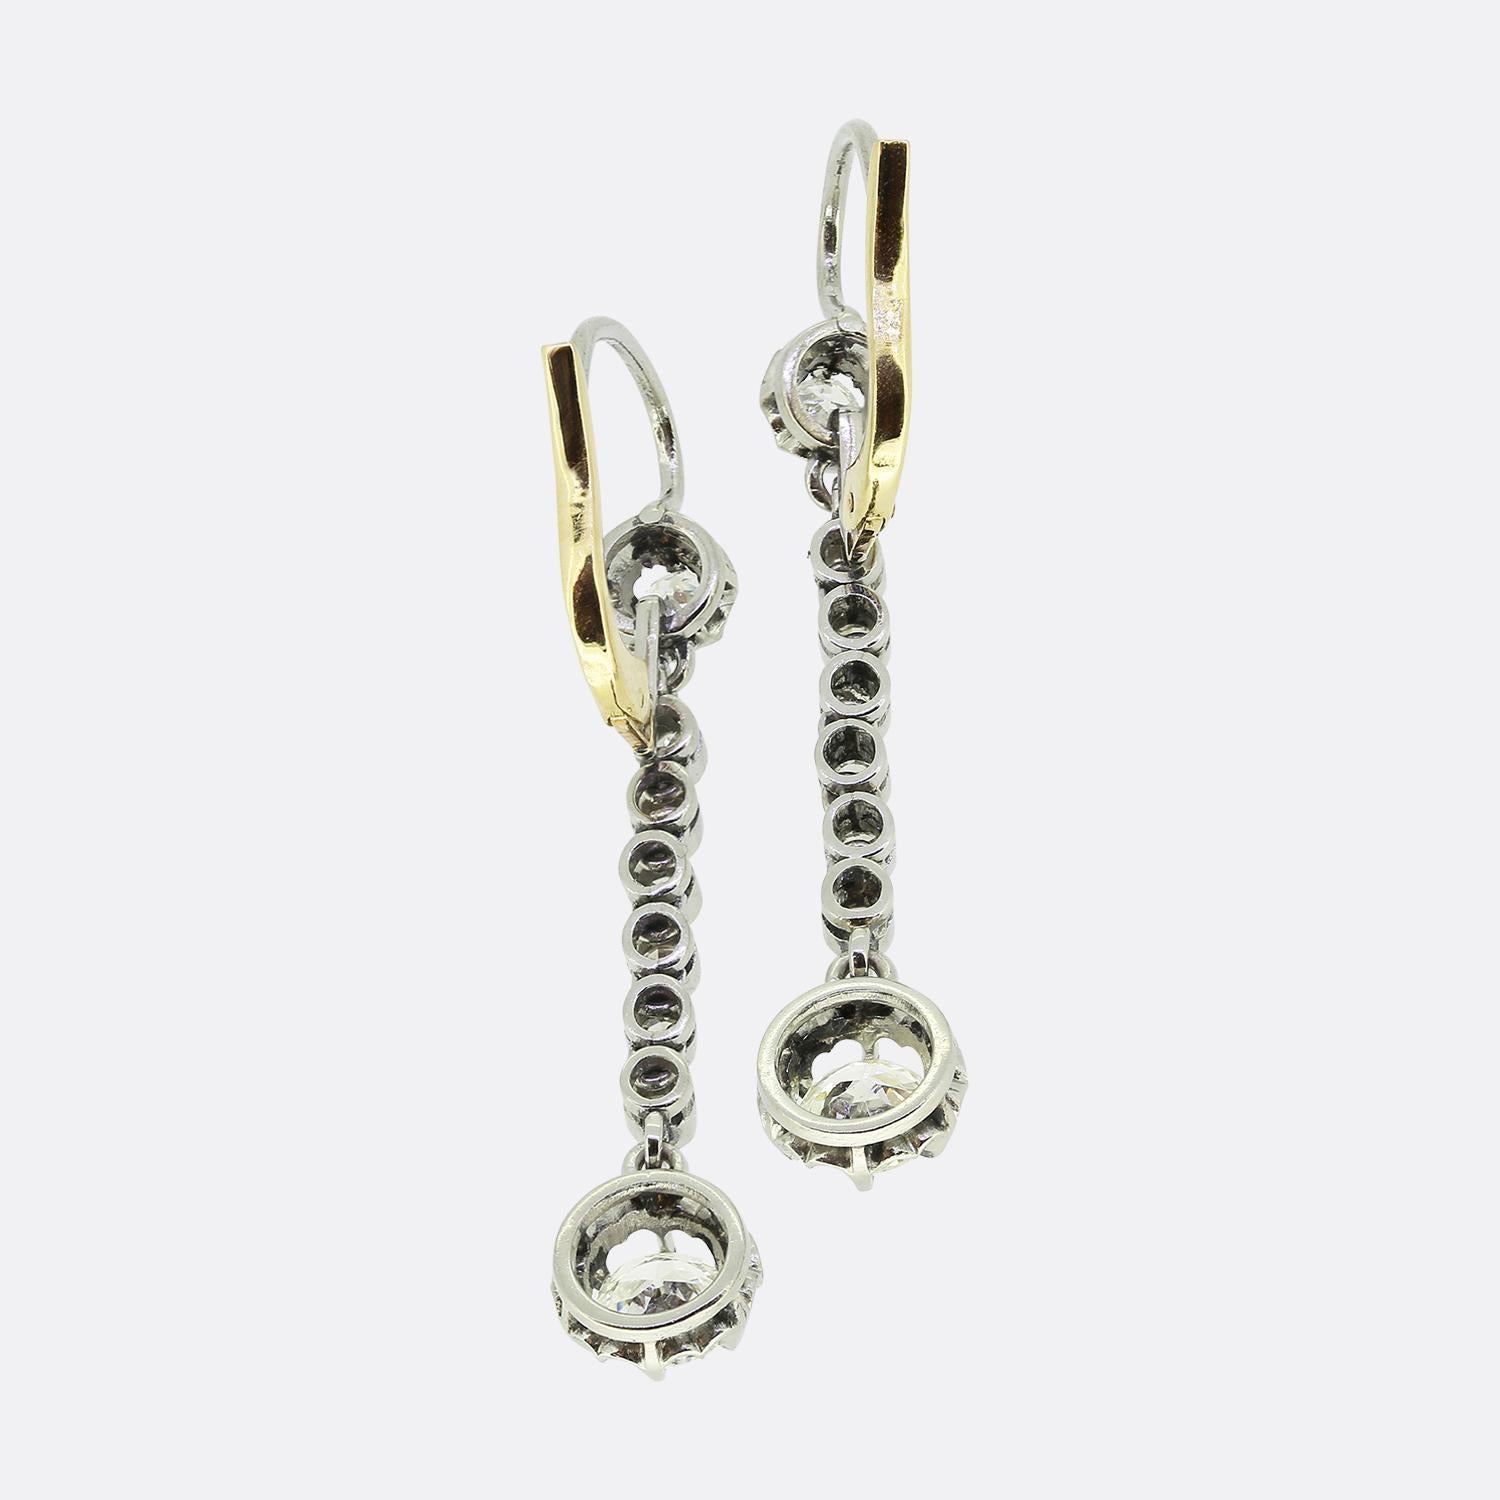 Hier haben wir ein elegantes Paar Diamant-Ohrringe aus der Edwardianischen Periode. Beide Stücke zeigen einen einzelnen runden, facettierten Diamanten mit altem europäischem Schliff an der Spitze, der in einer Butterblumenfassung sitzt und eine